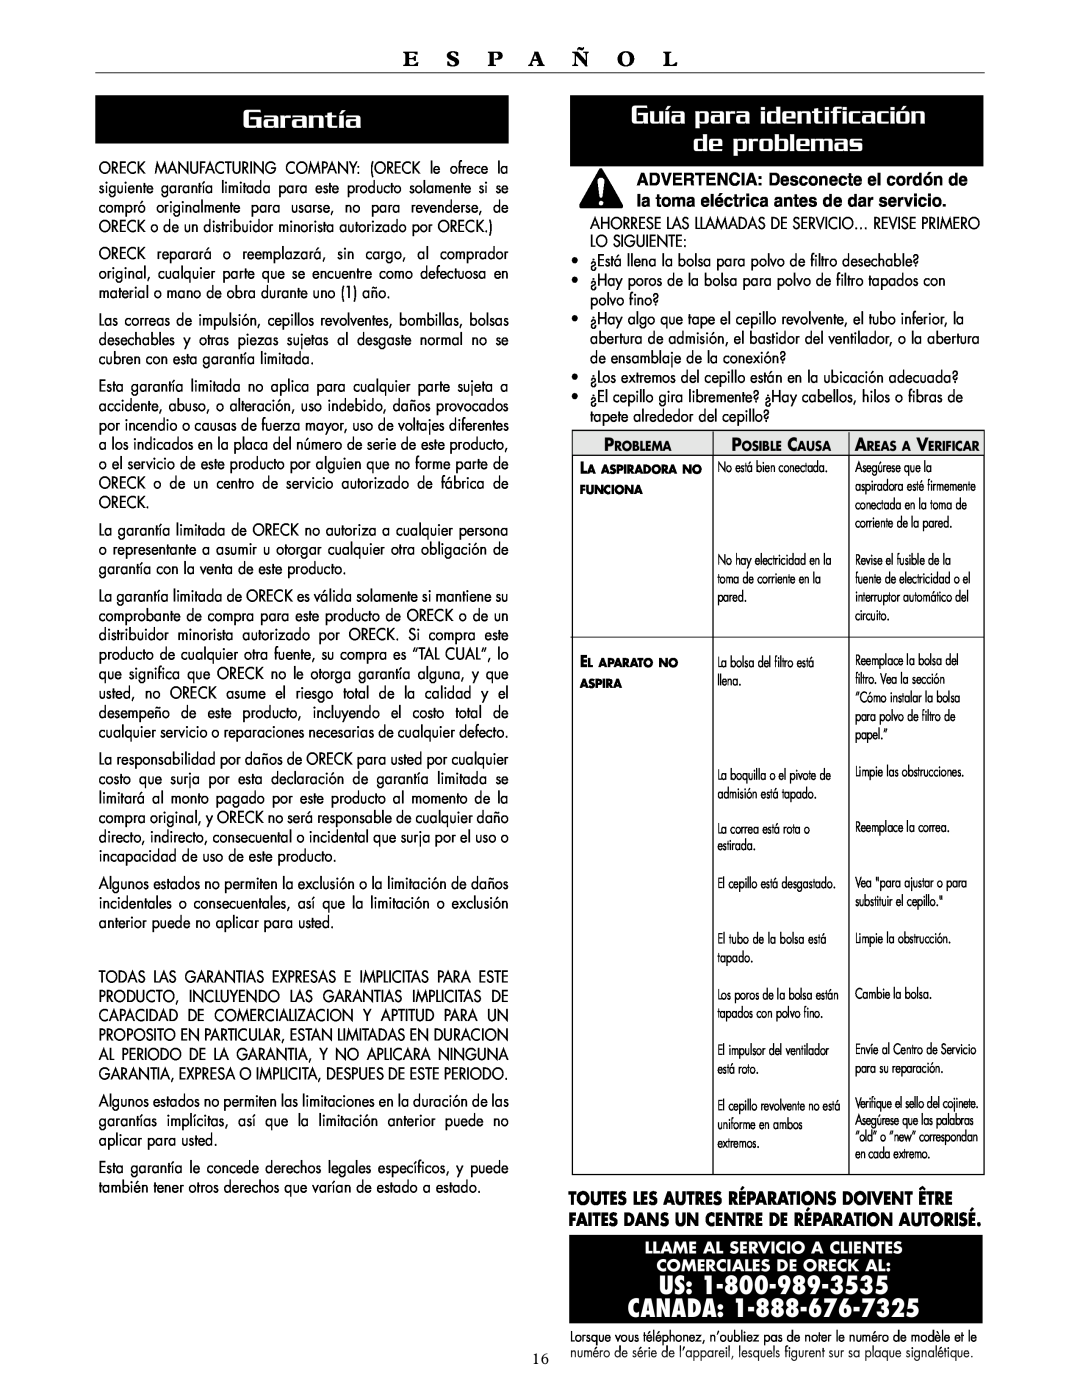 Oreck XL2100HH Garantía, Guía para identificación de problemas, Us Canada, E S P A Ñ O L, Llame Al Servicio A Clientes 